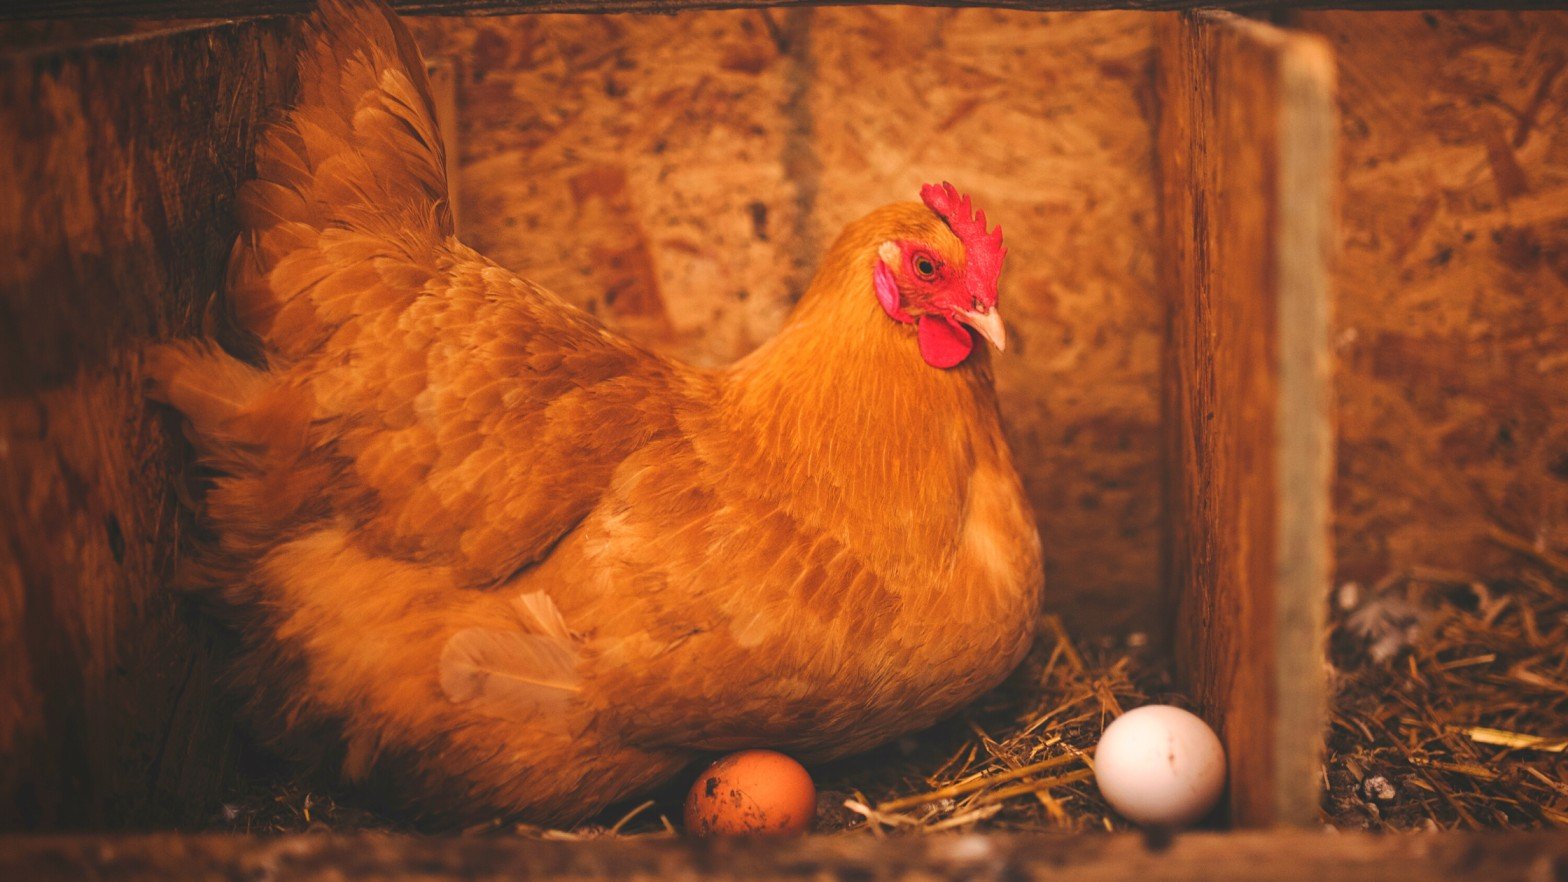 Chicken Egg hatching